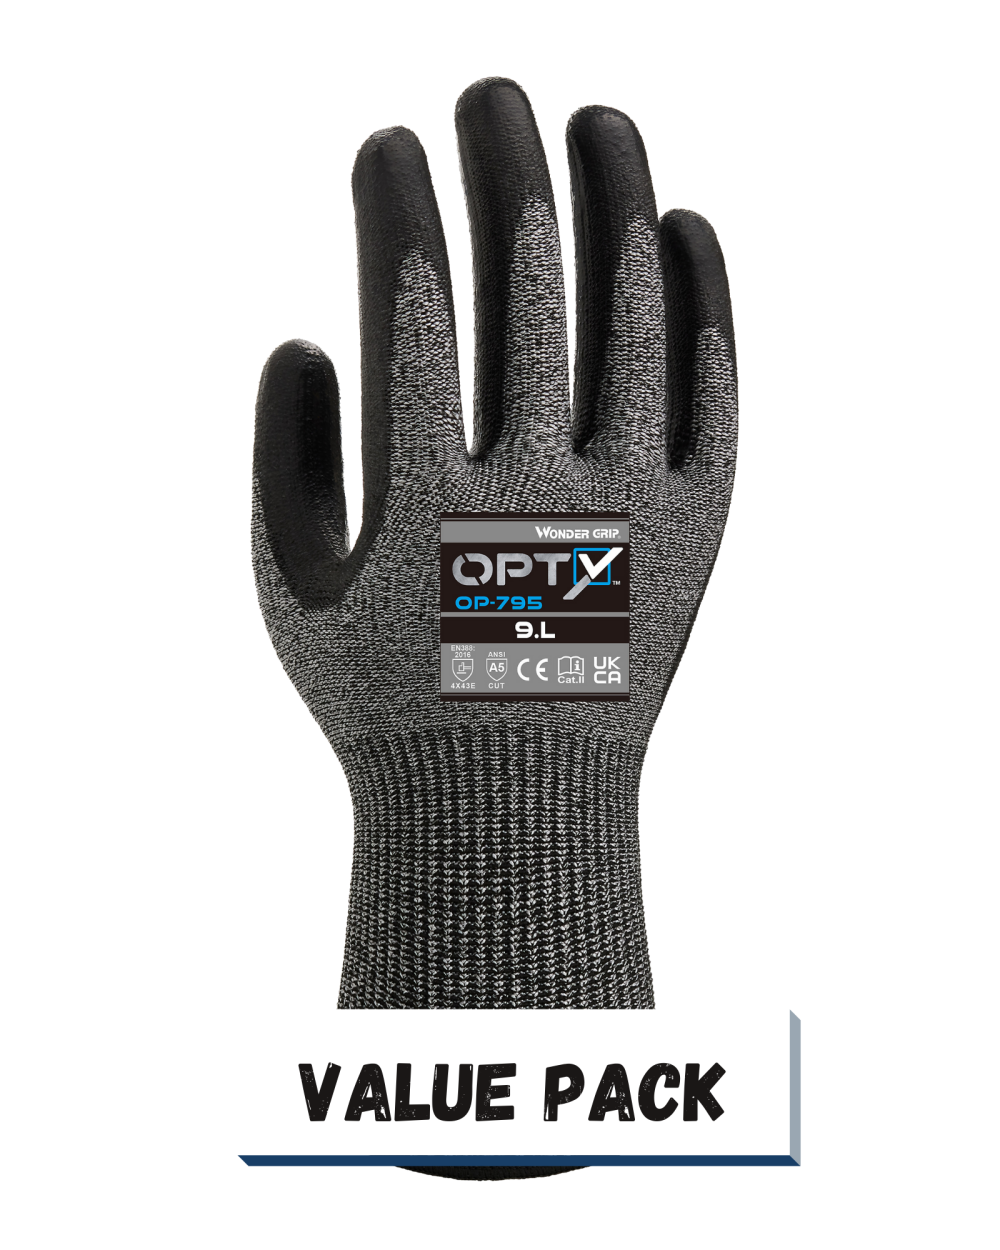 Wonder Grip OP-795 Opty Value Pack